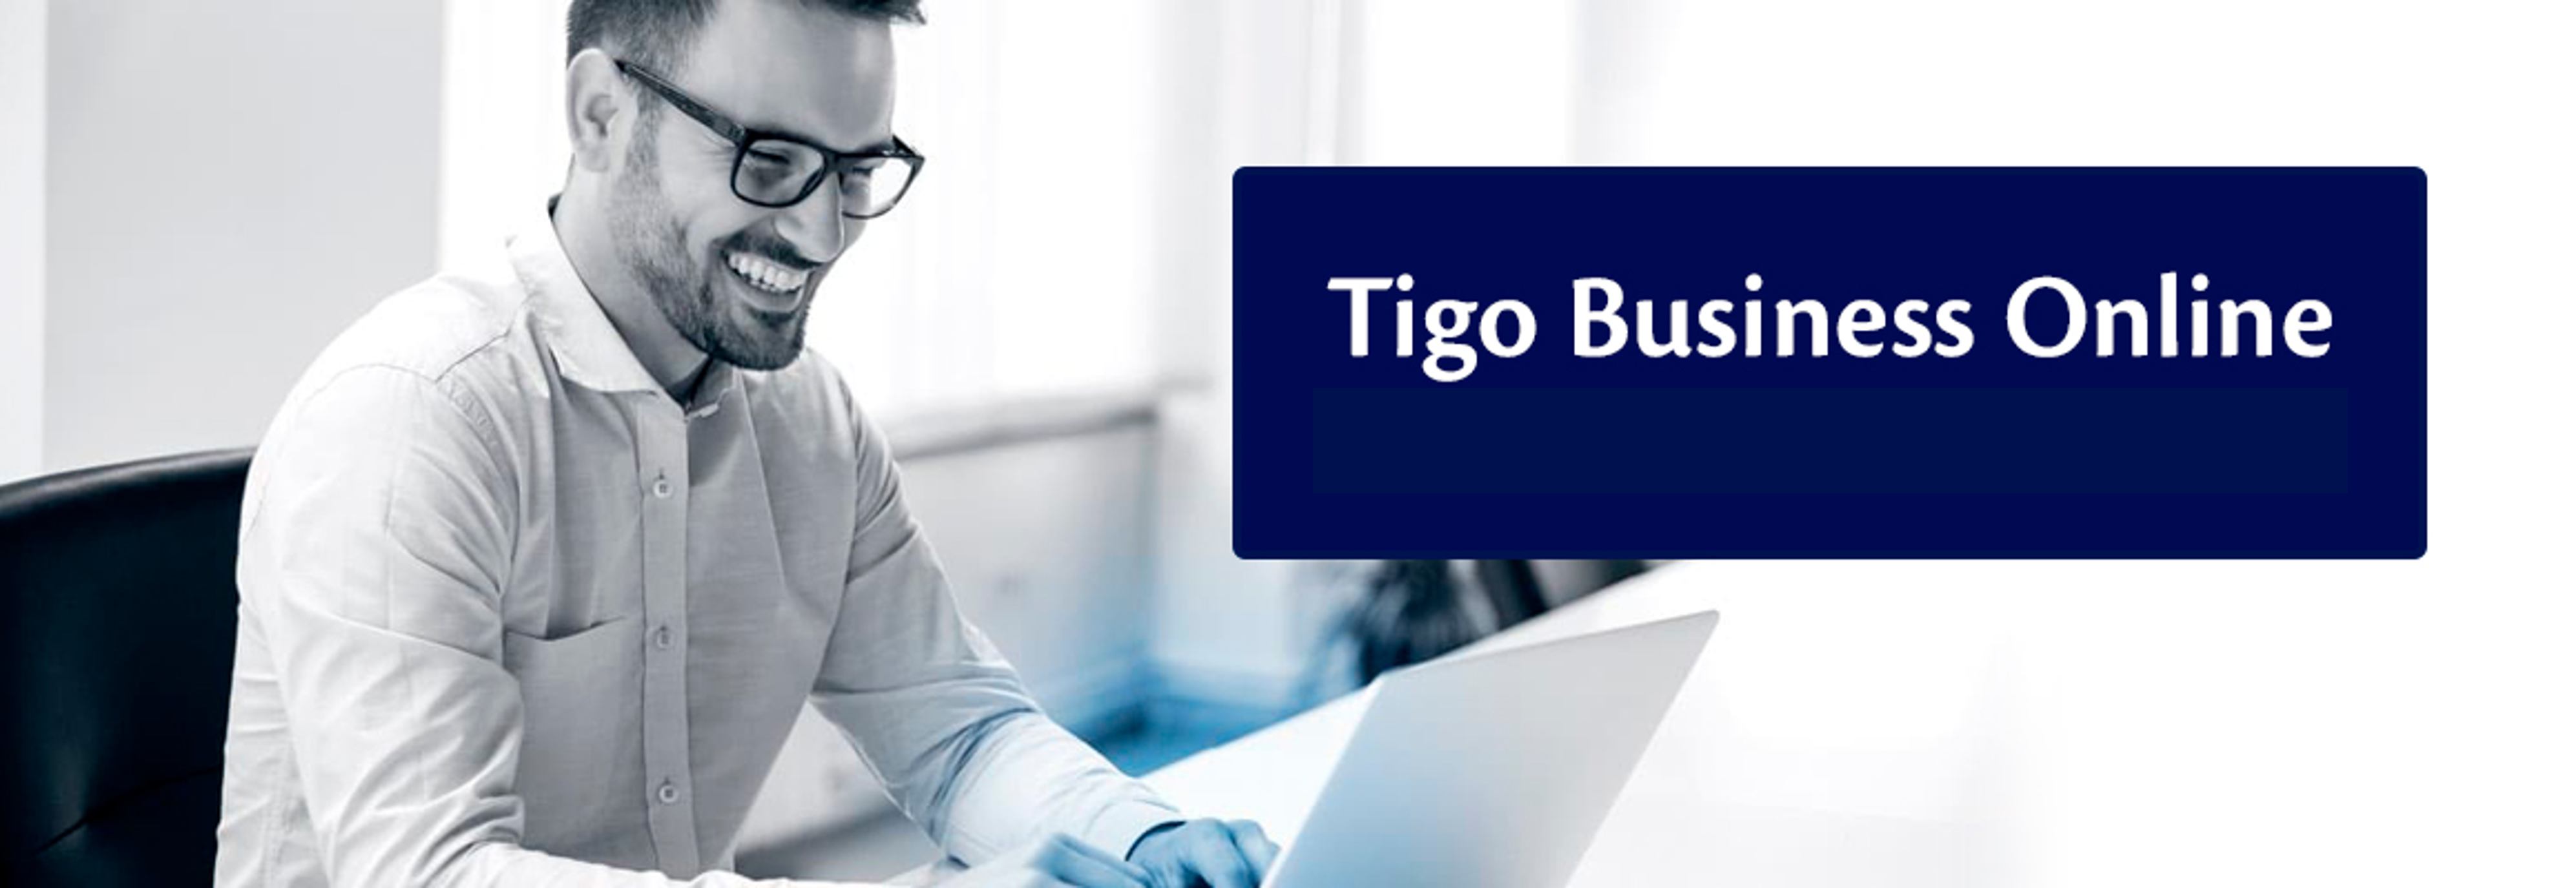 TIGO BUSINESS ONLINE MI TIGO PARA EMPRESAS.png